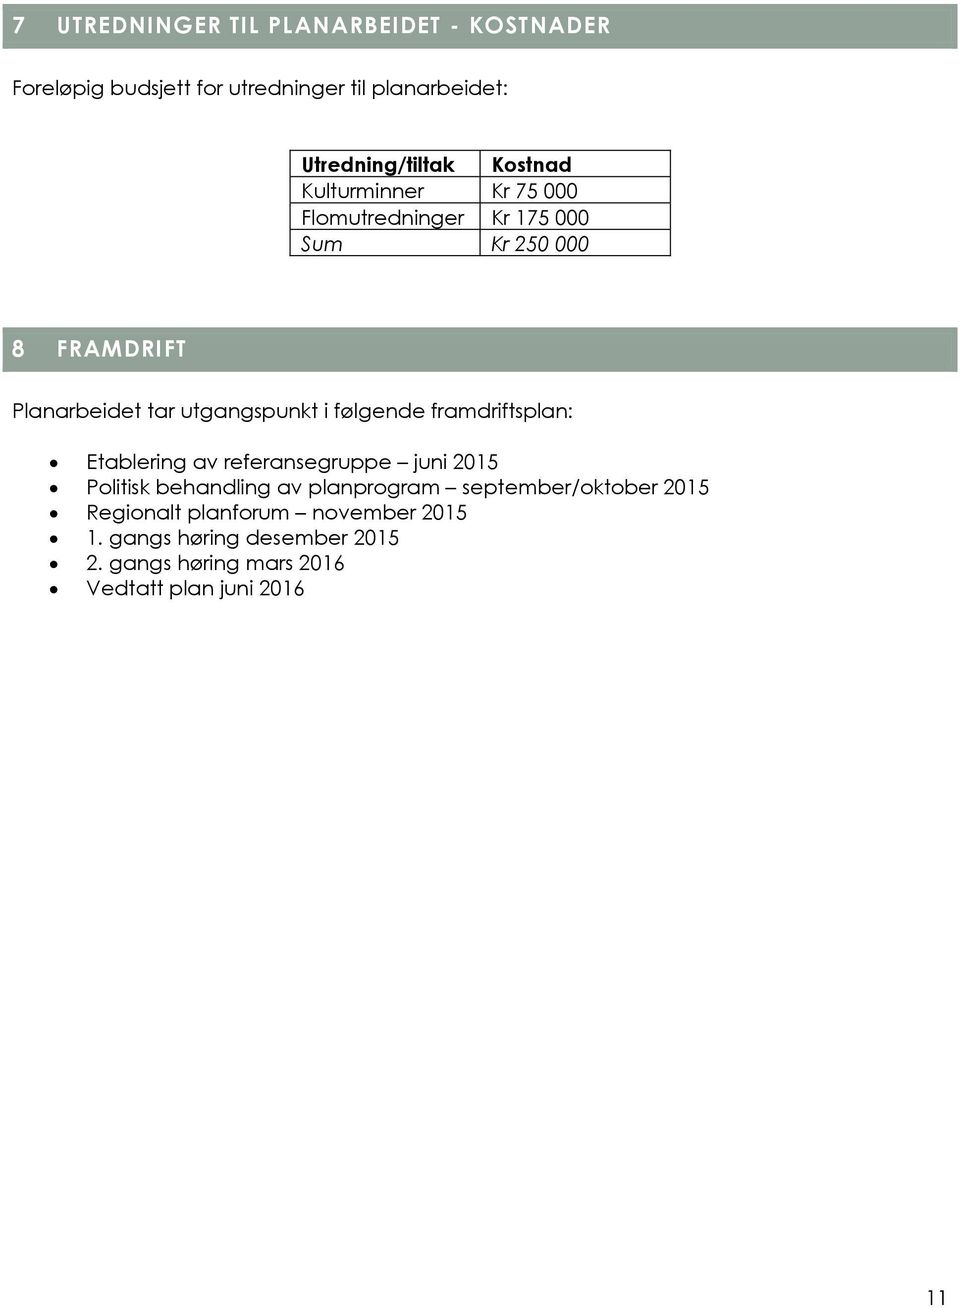 følgende framdriftsplan: Etablering av referansegruppe juni 2015 Politisk behandling av planprogram